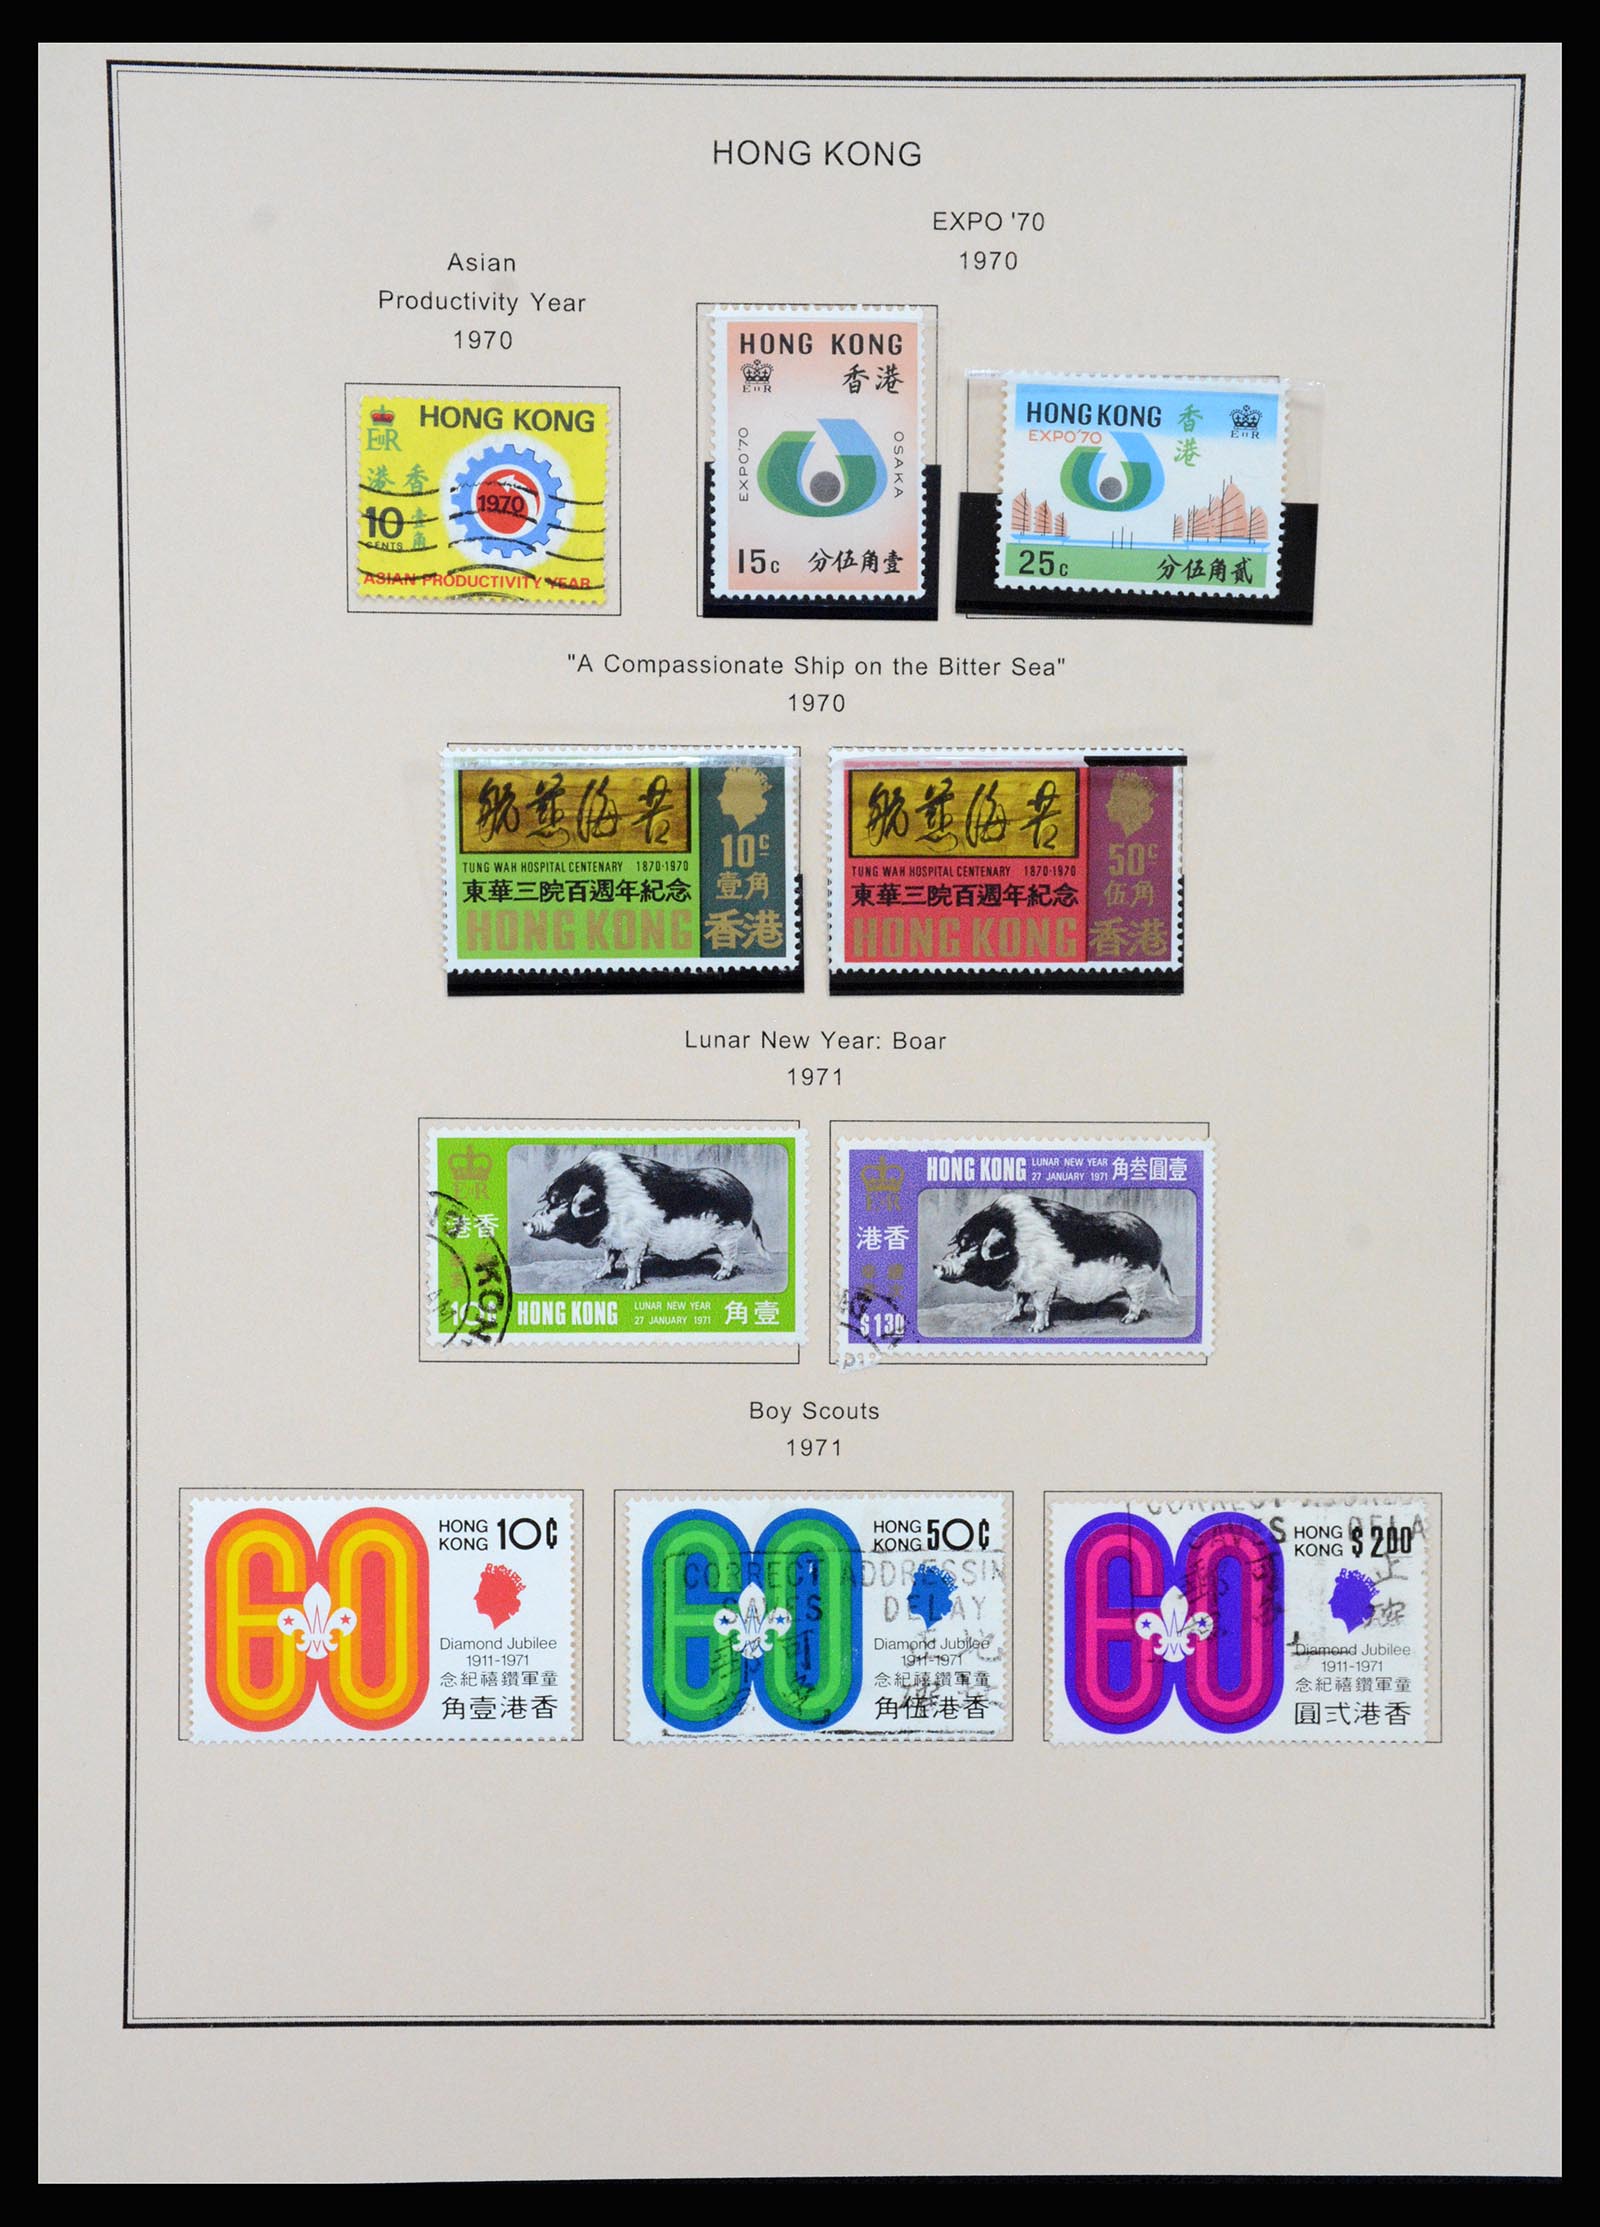 37210 023 - Stamp collection 37210 Hong Kong 1862-2000.